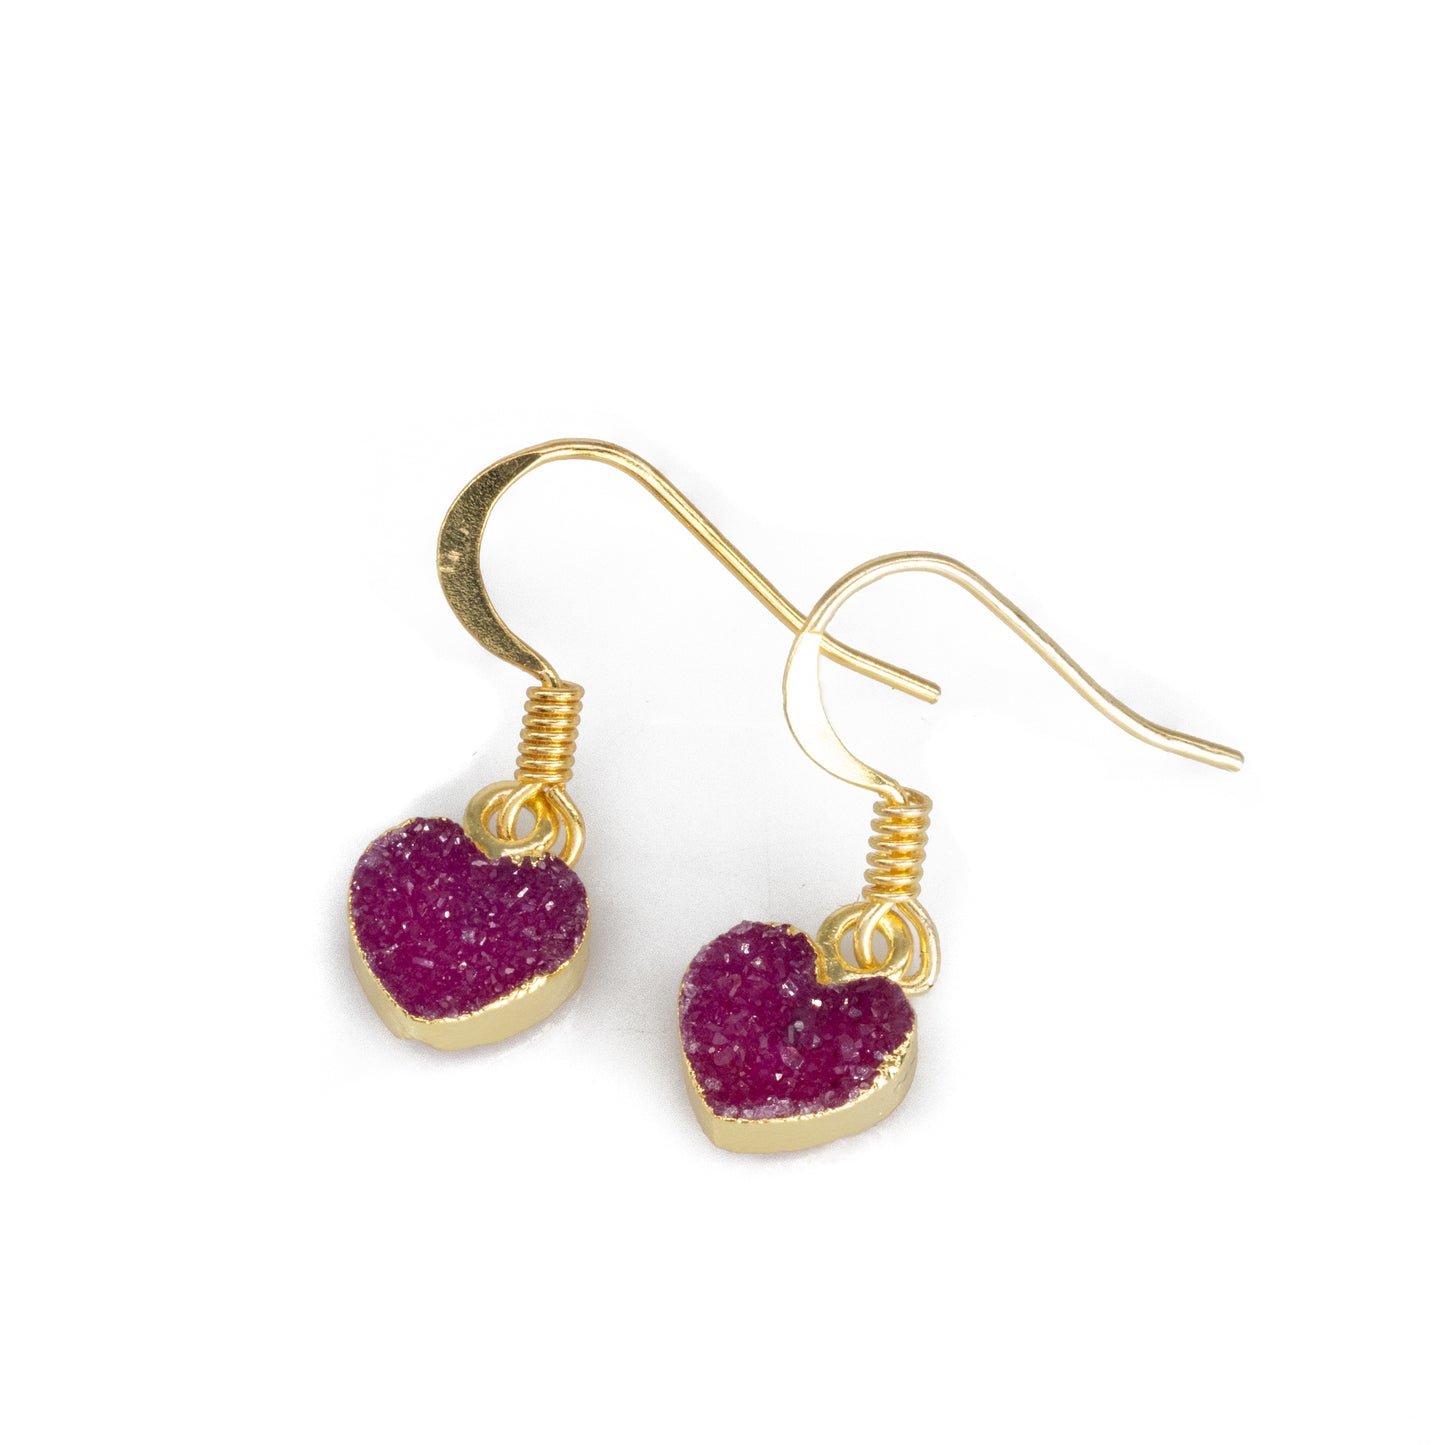 Tinny Heart Shape Druzy Quartz Dangle Earrings for Women Girls Valentine's Day Gift